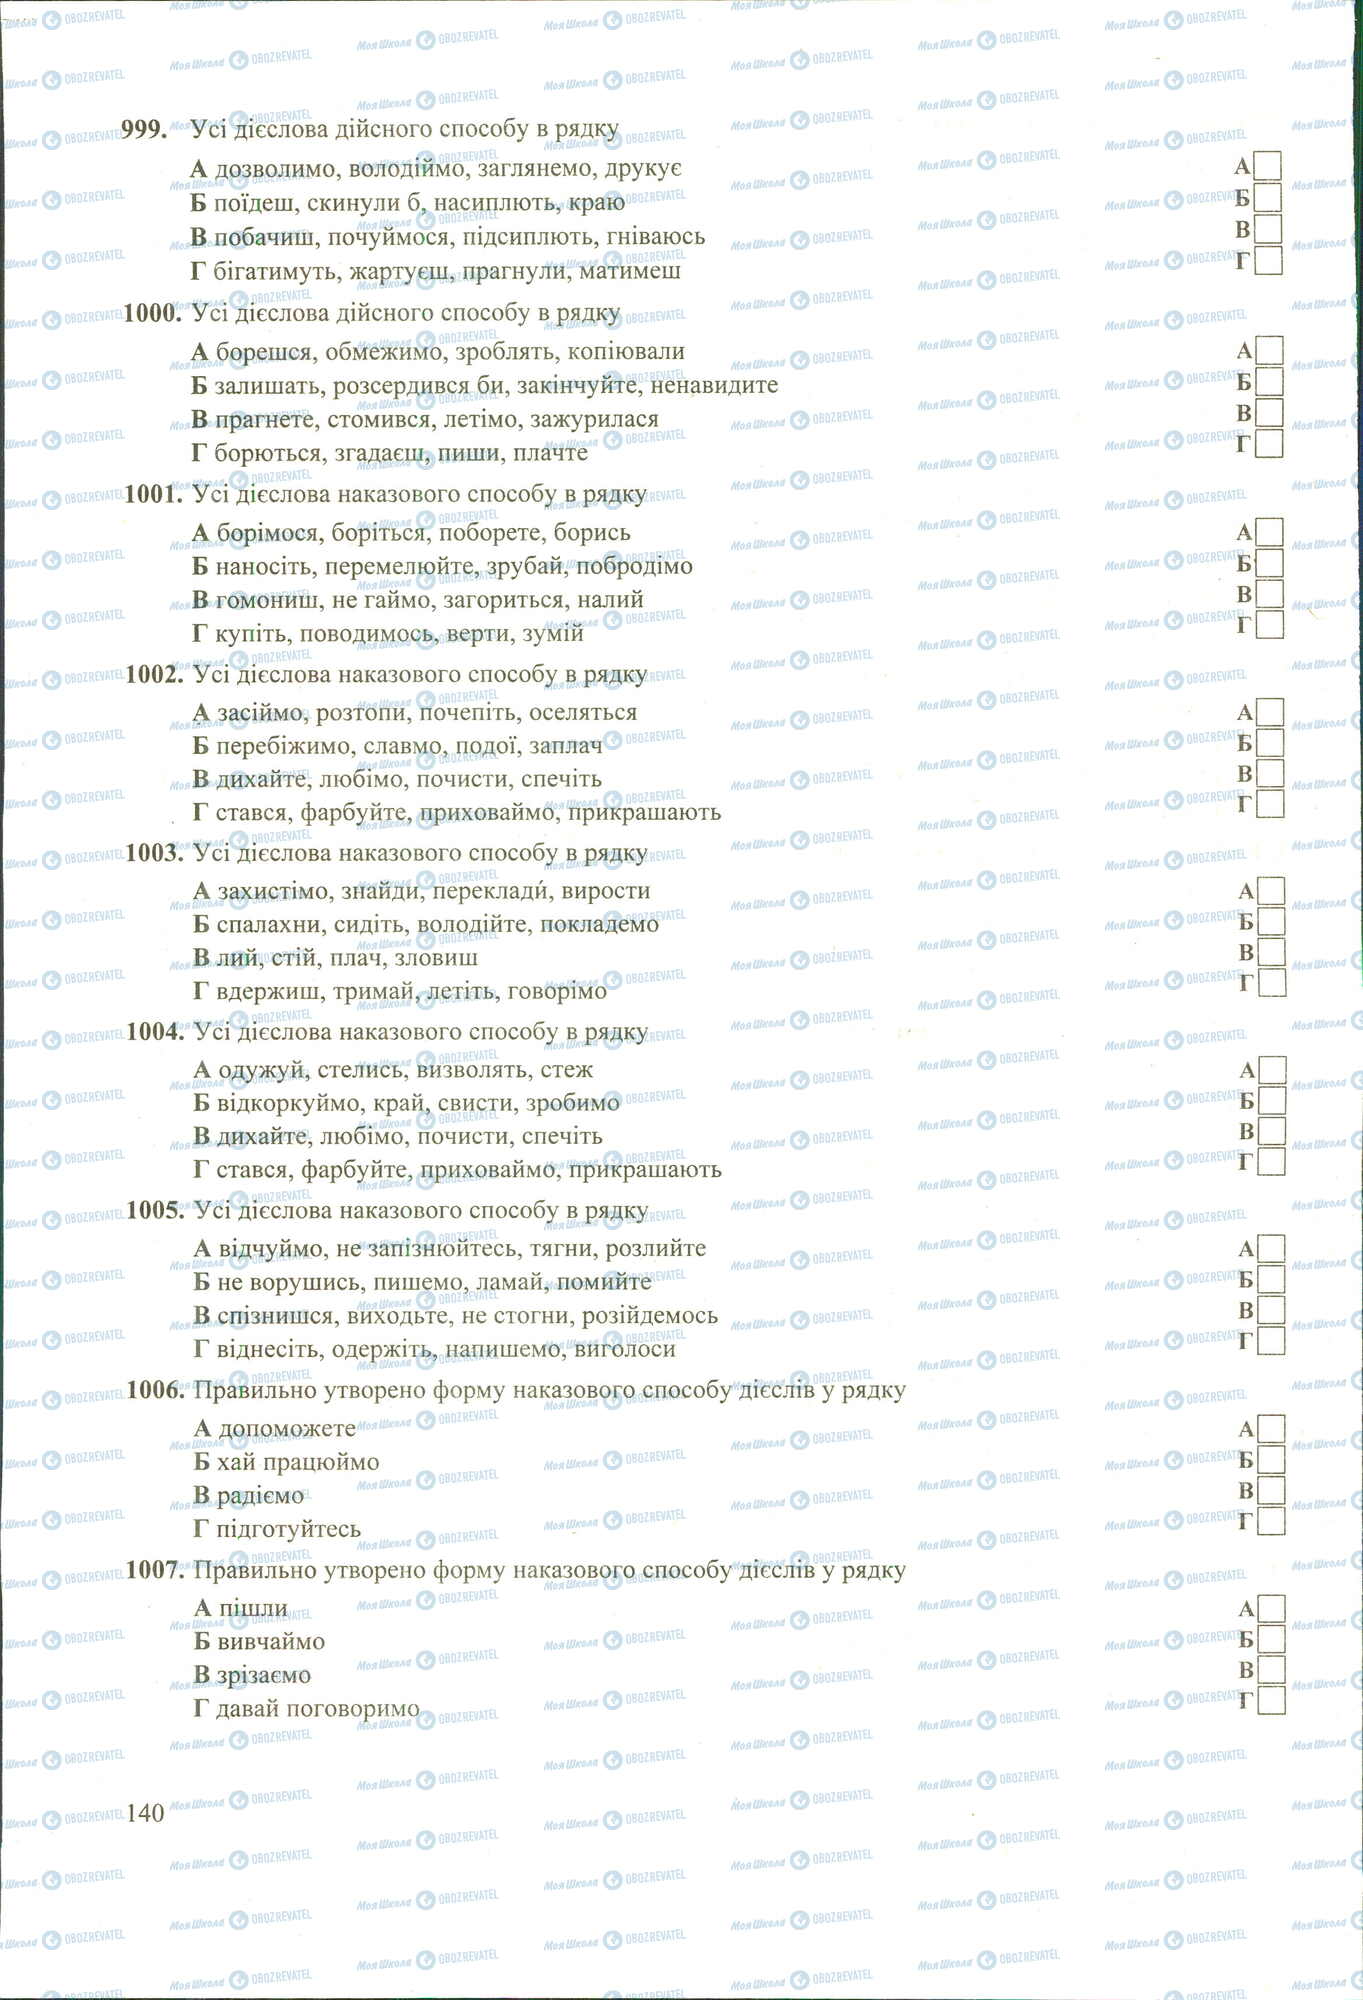 ЗНО Укр мова 11 класс страница 990-1007